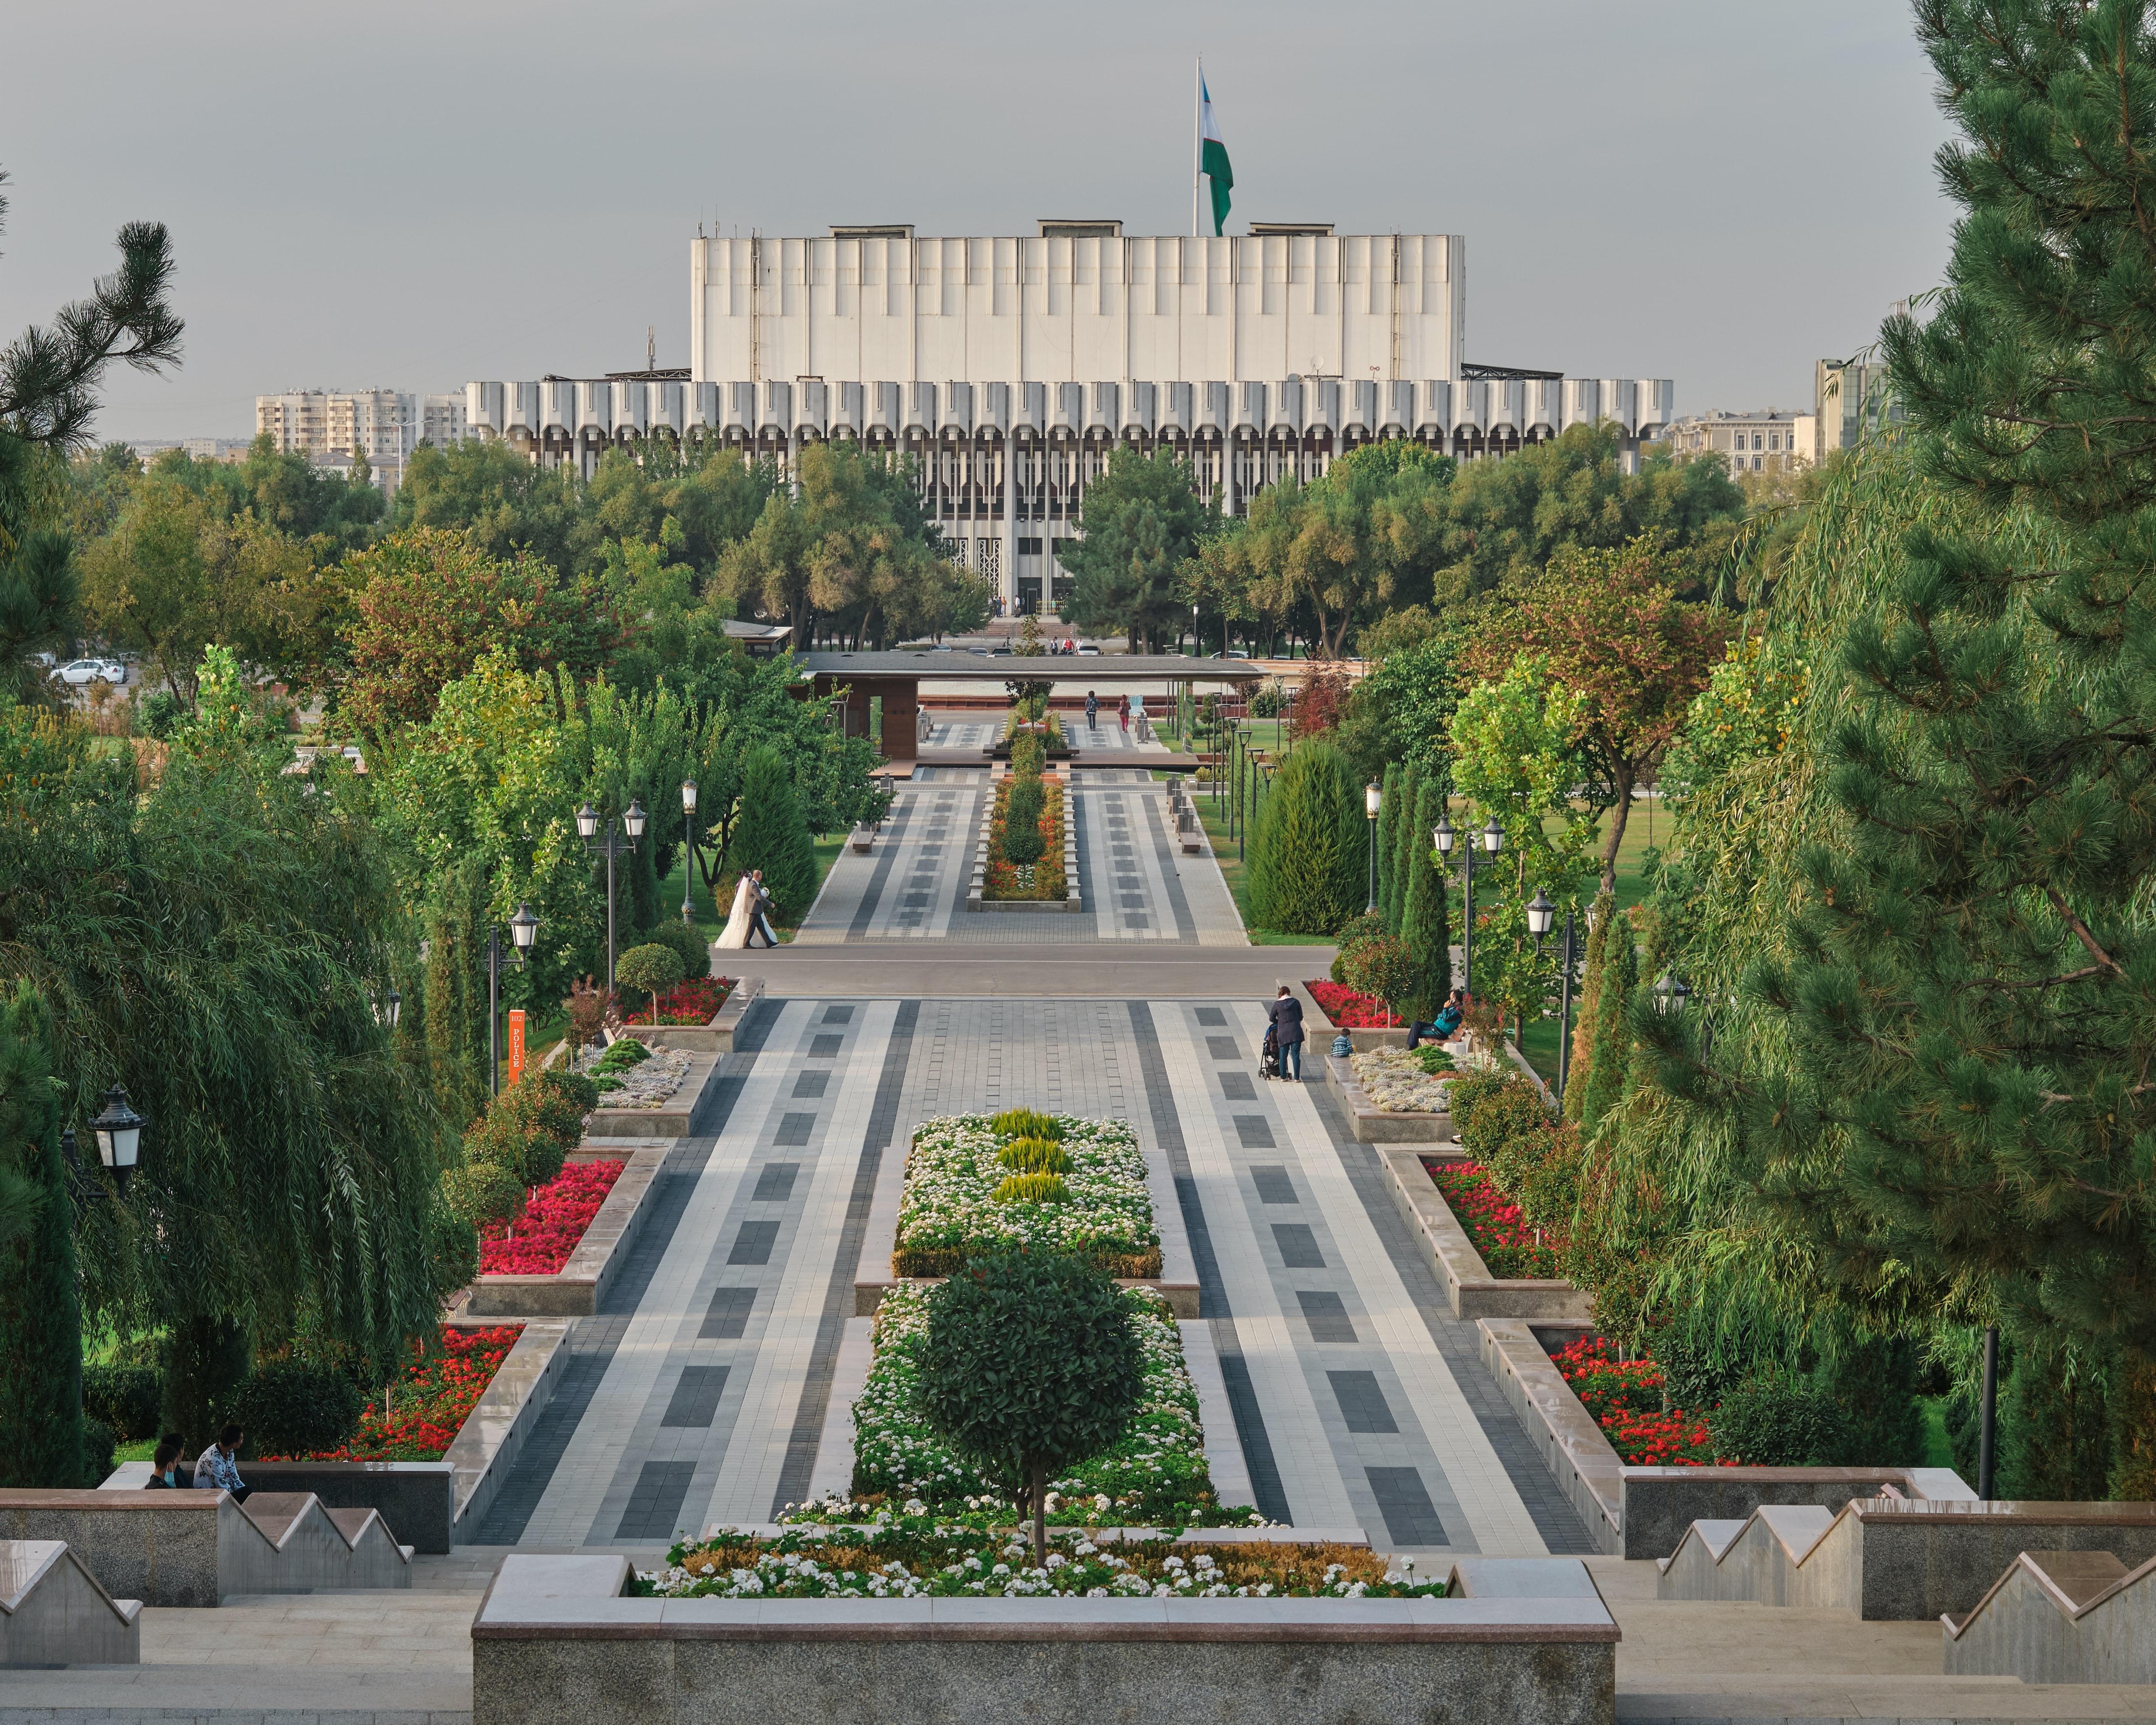 Public square in Tashkent